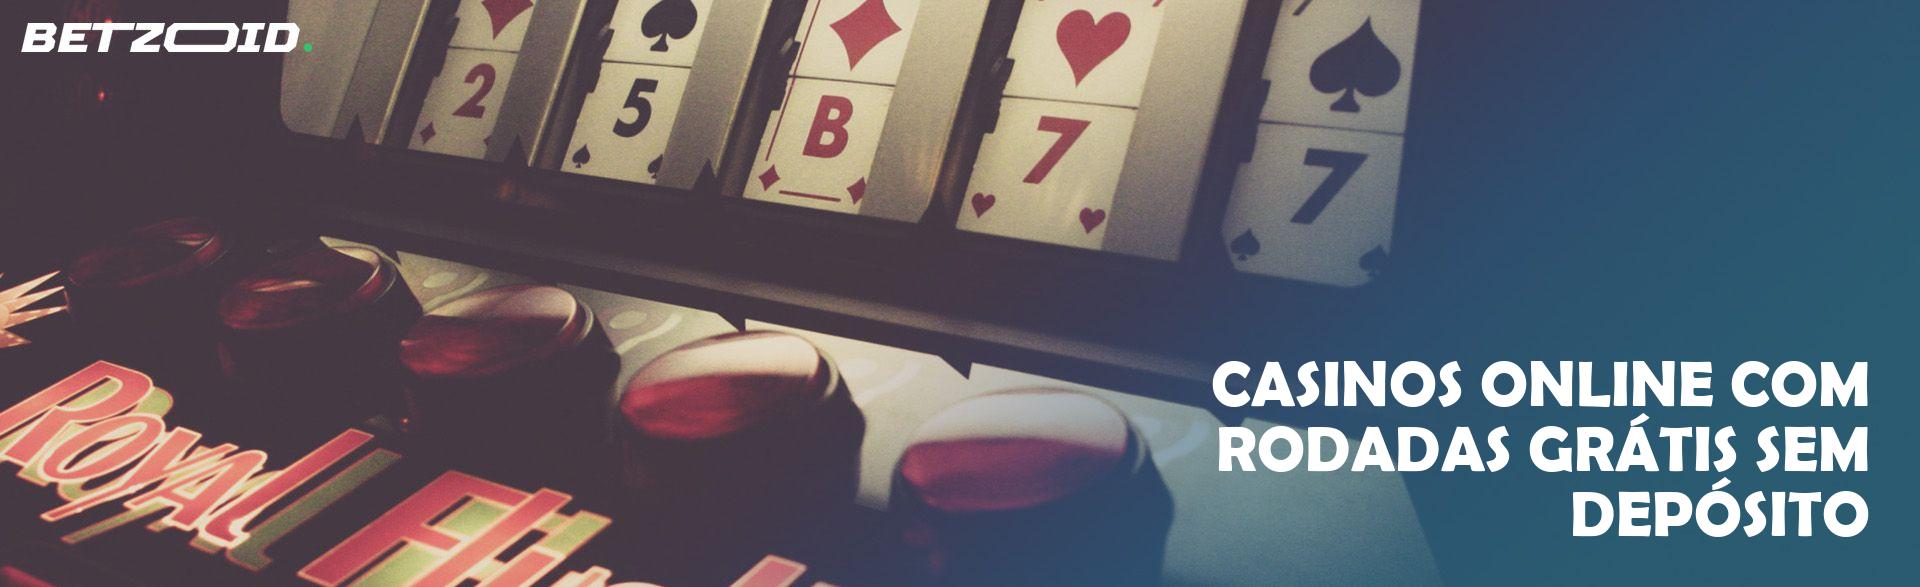 Casinos Online com Rodadas Grátis sem Depósito.